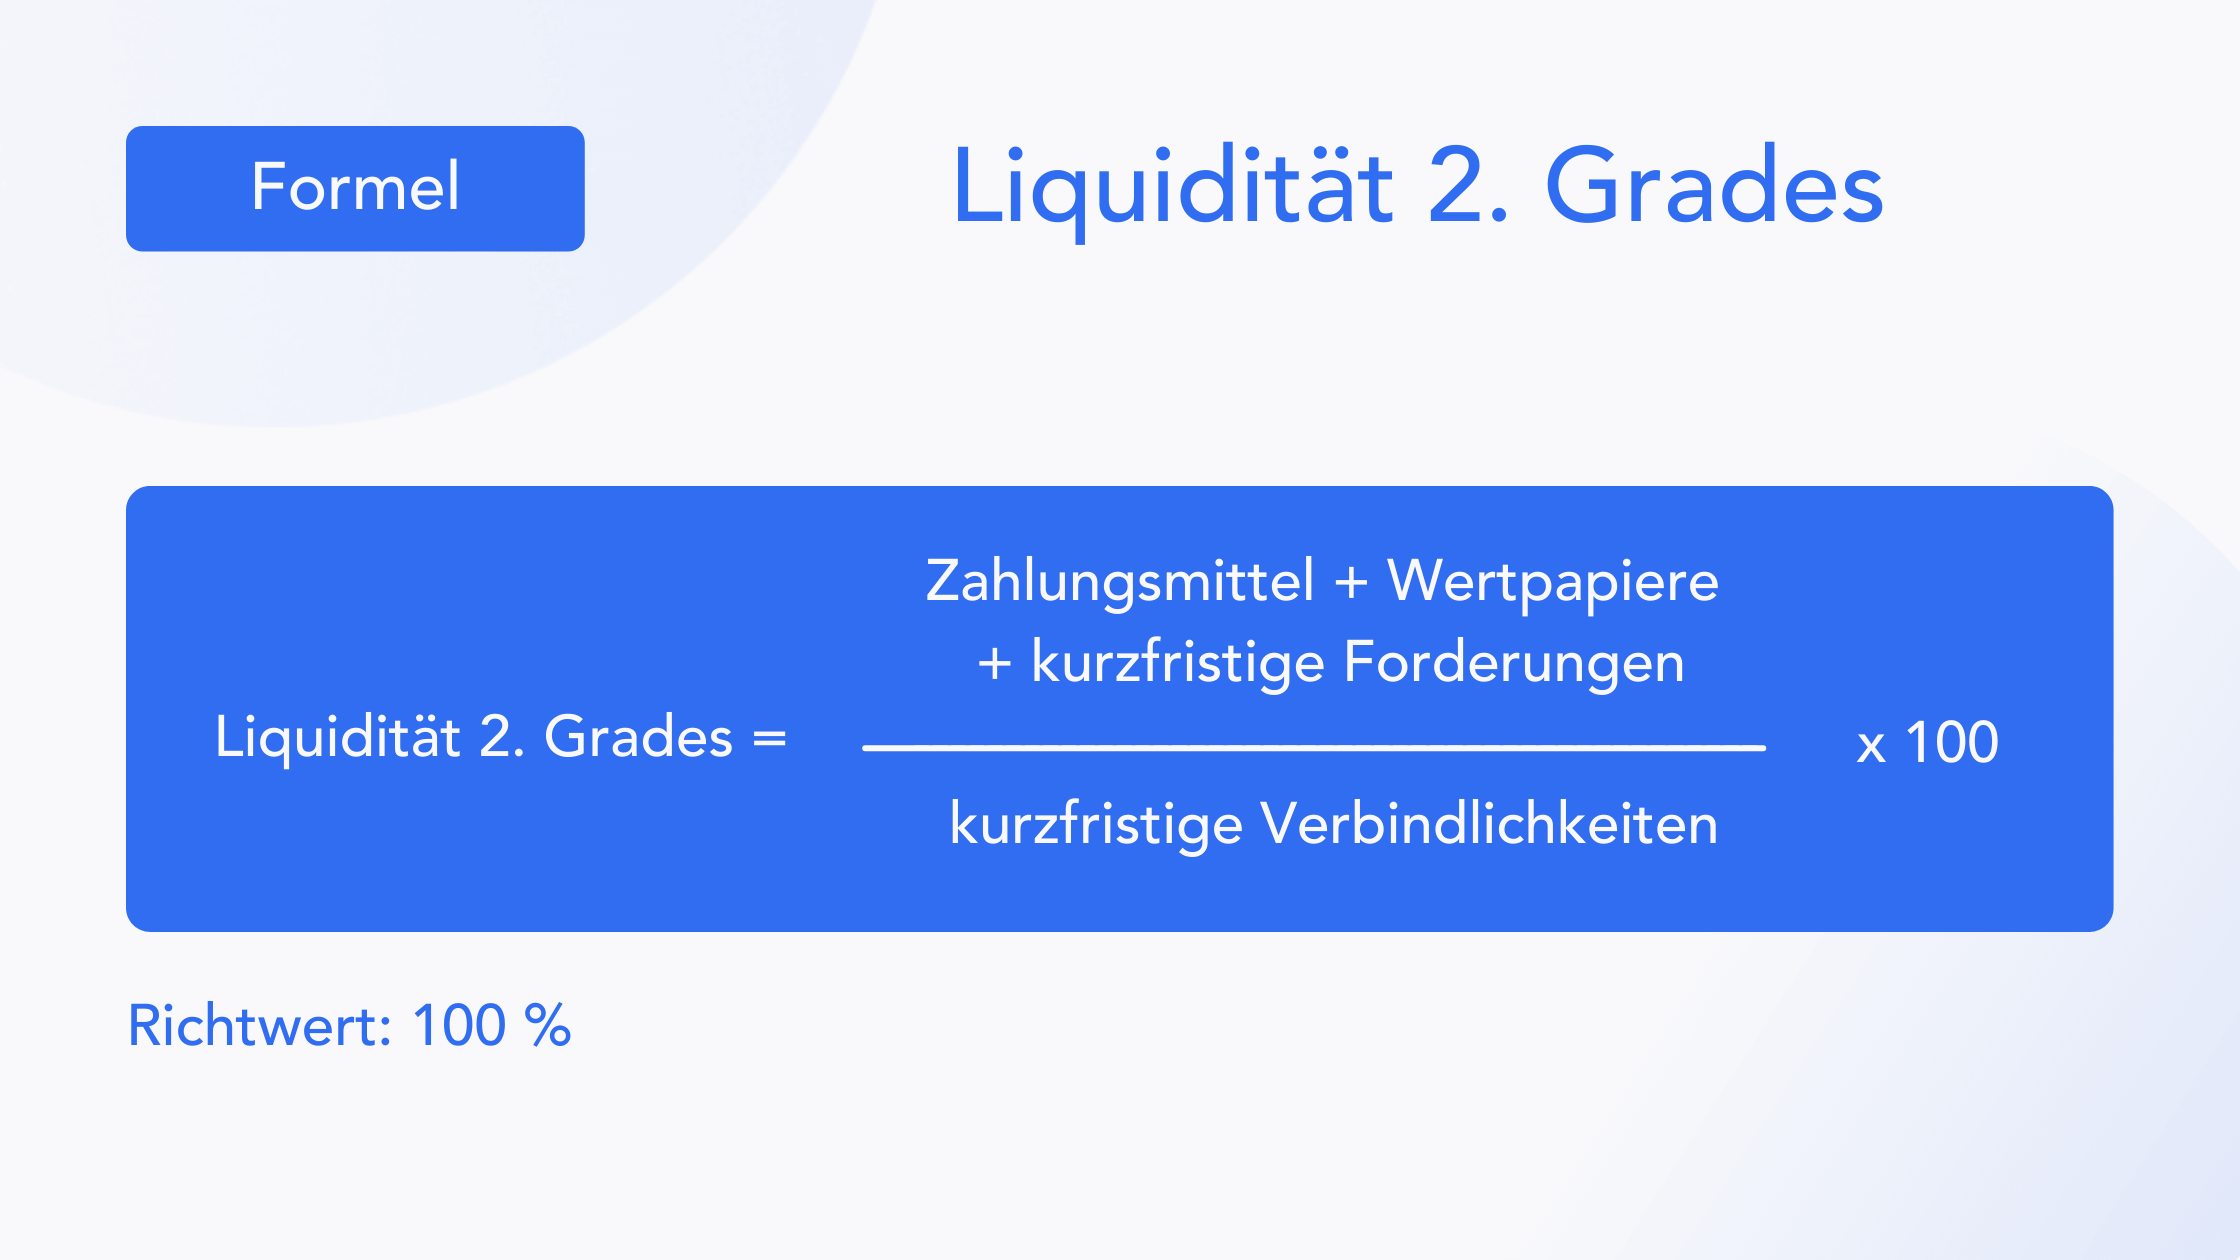 Blog - Formel - Liquidität 2. Grades